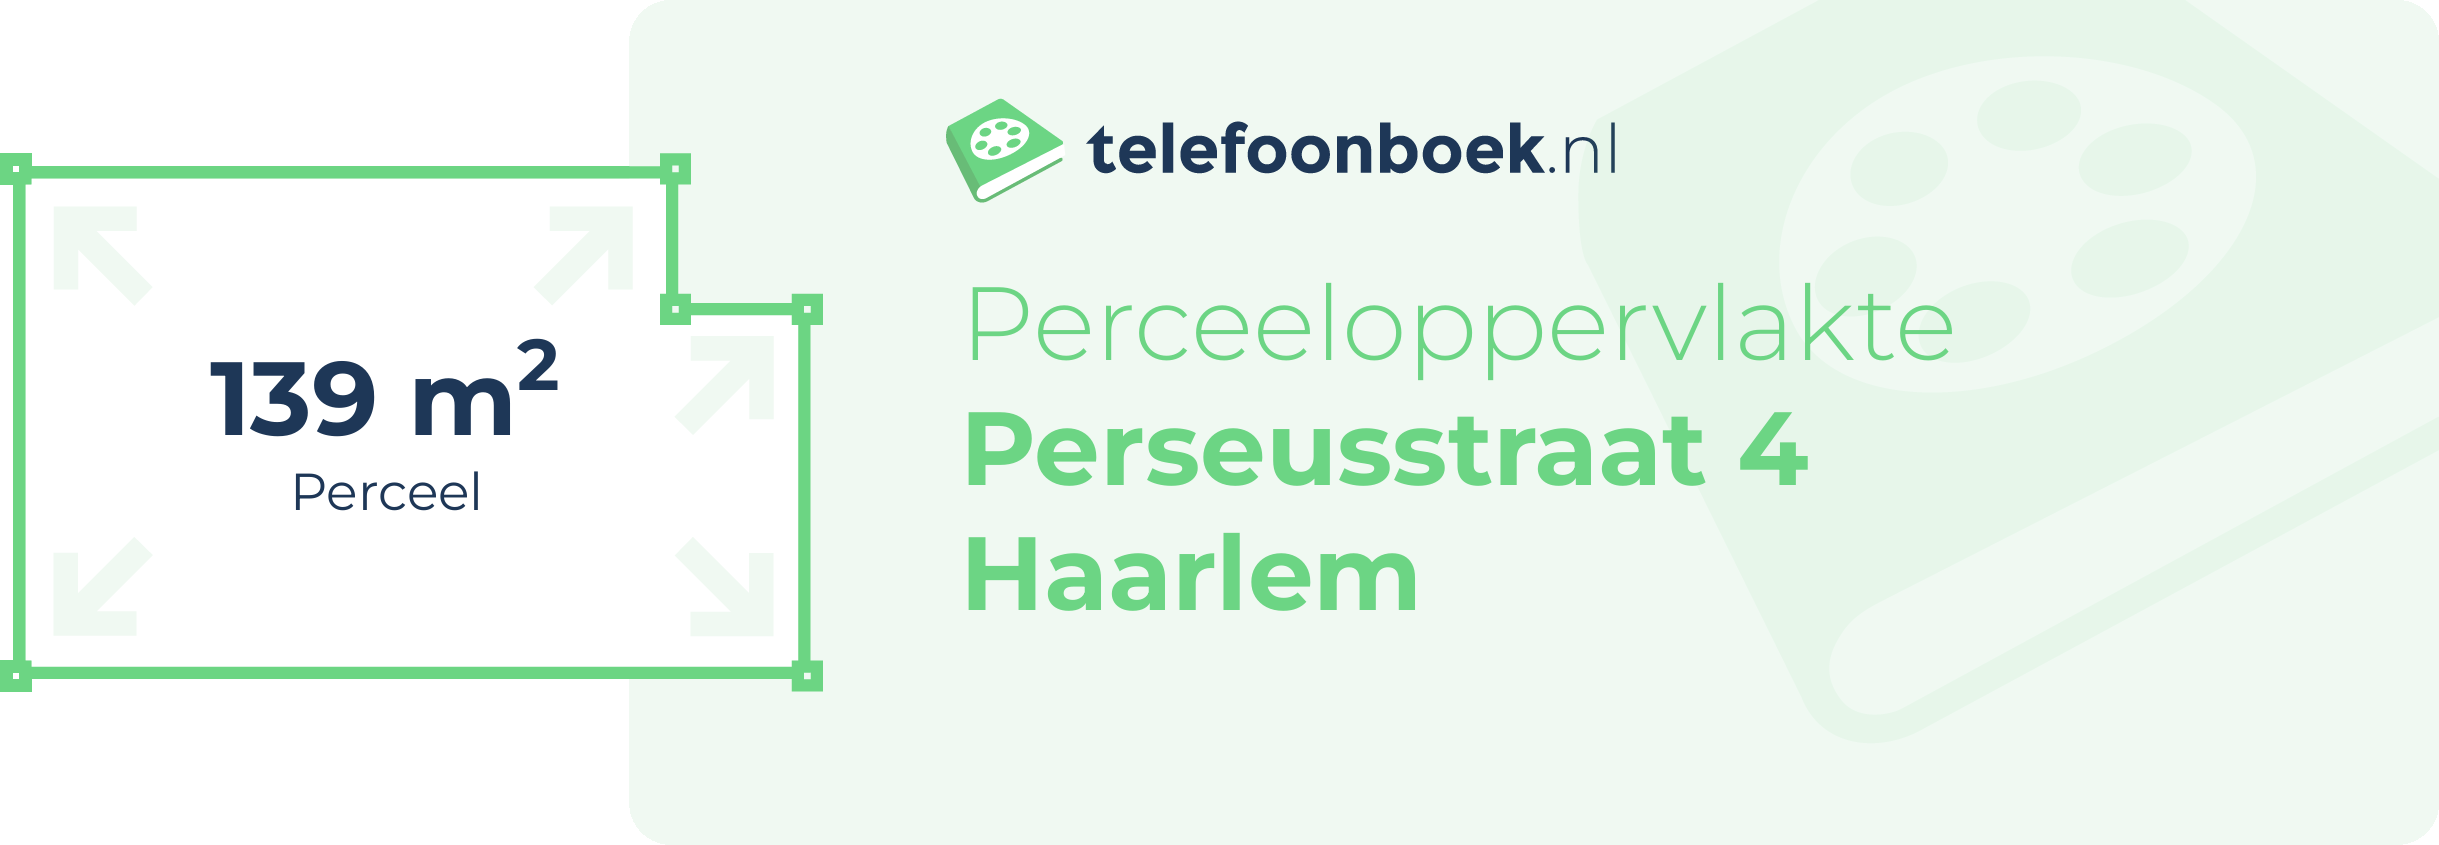 Perceeloppervlakte Perseusstraat 4 Haarlem